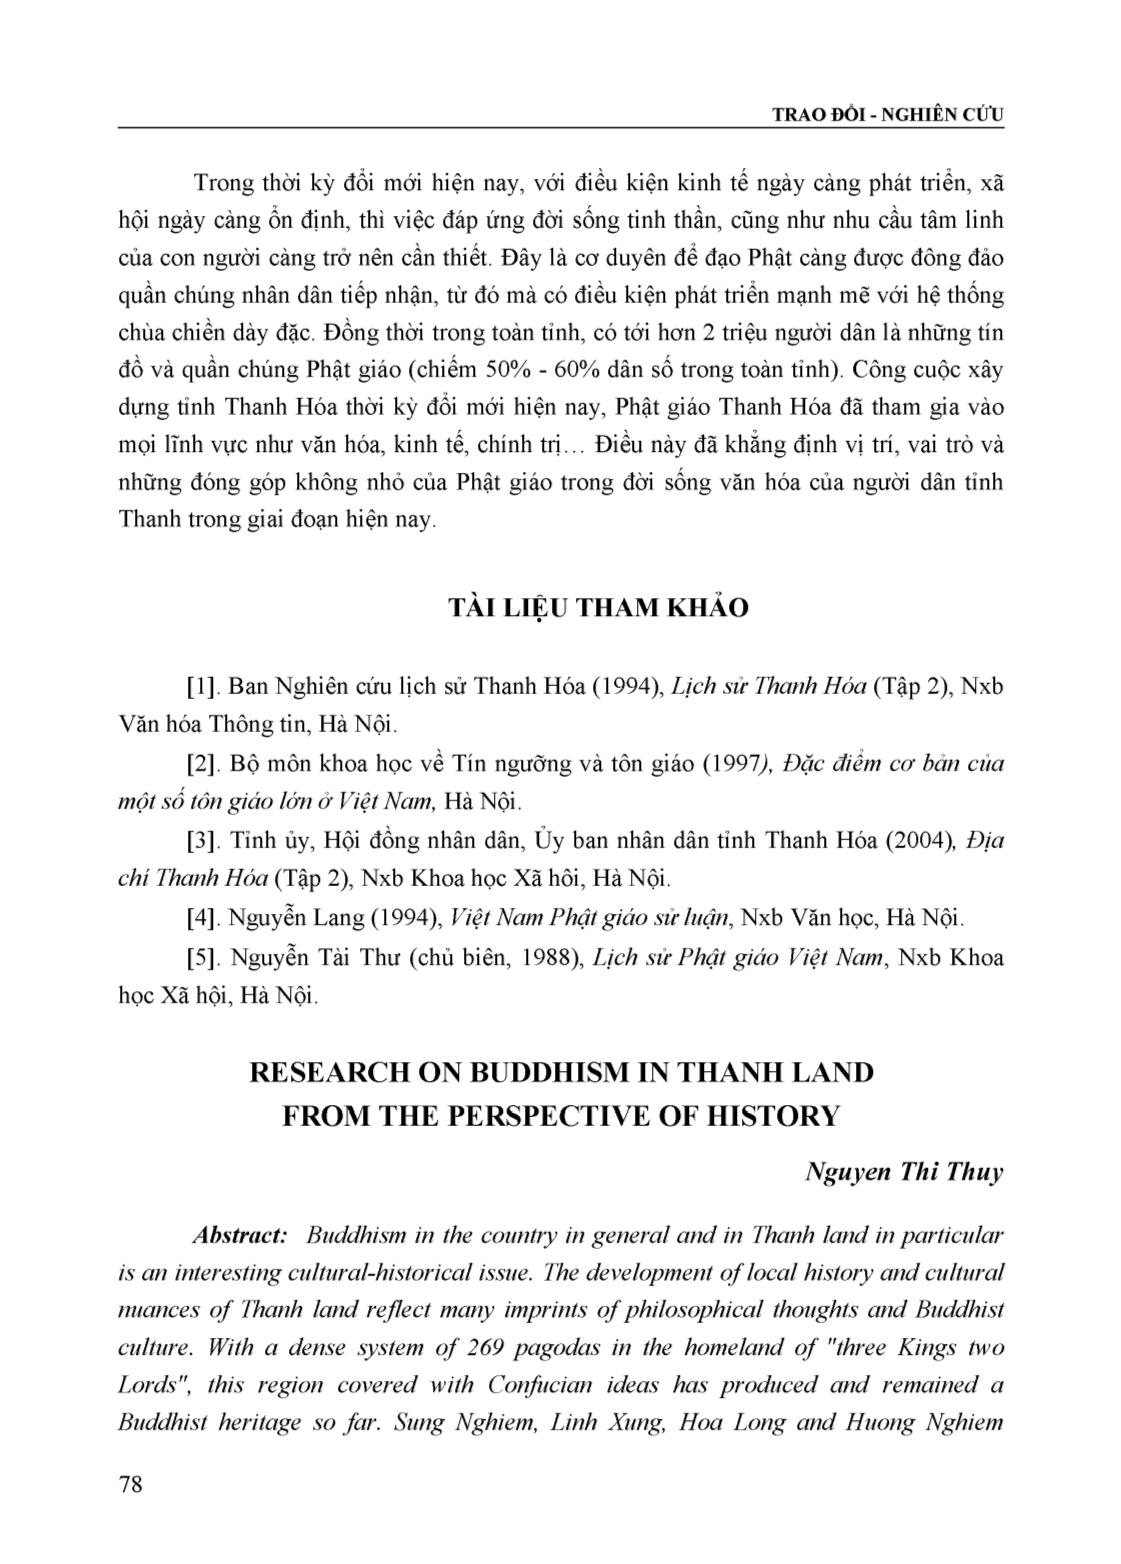 Phật giáo xứ Thanh nhìn từ góc độ lịch sử trang 7